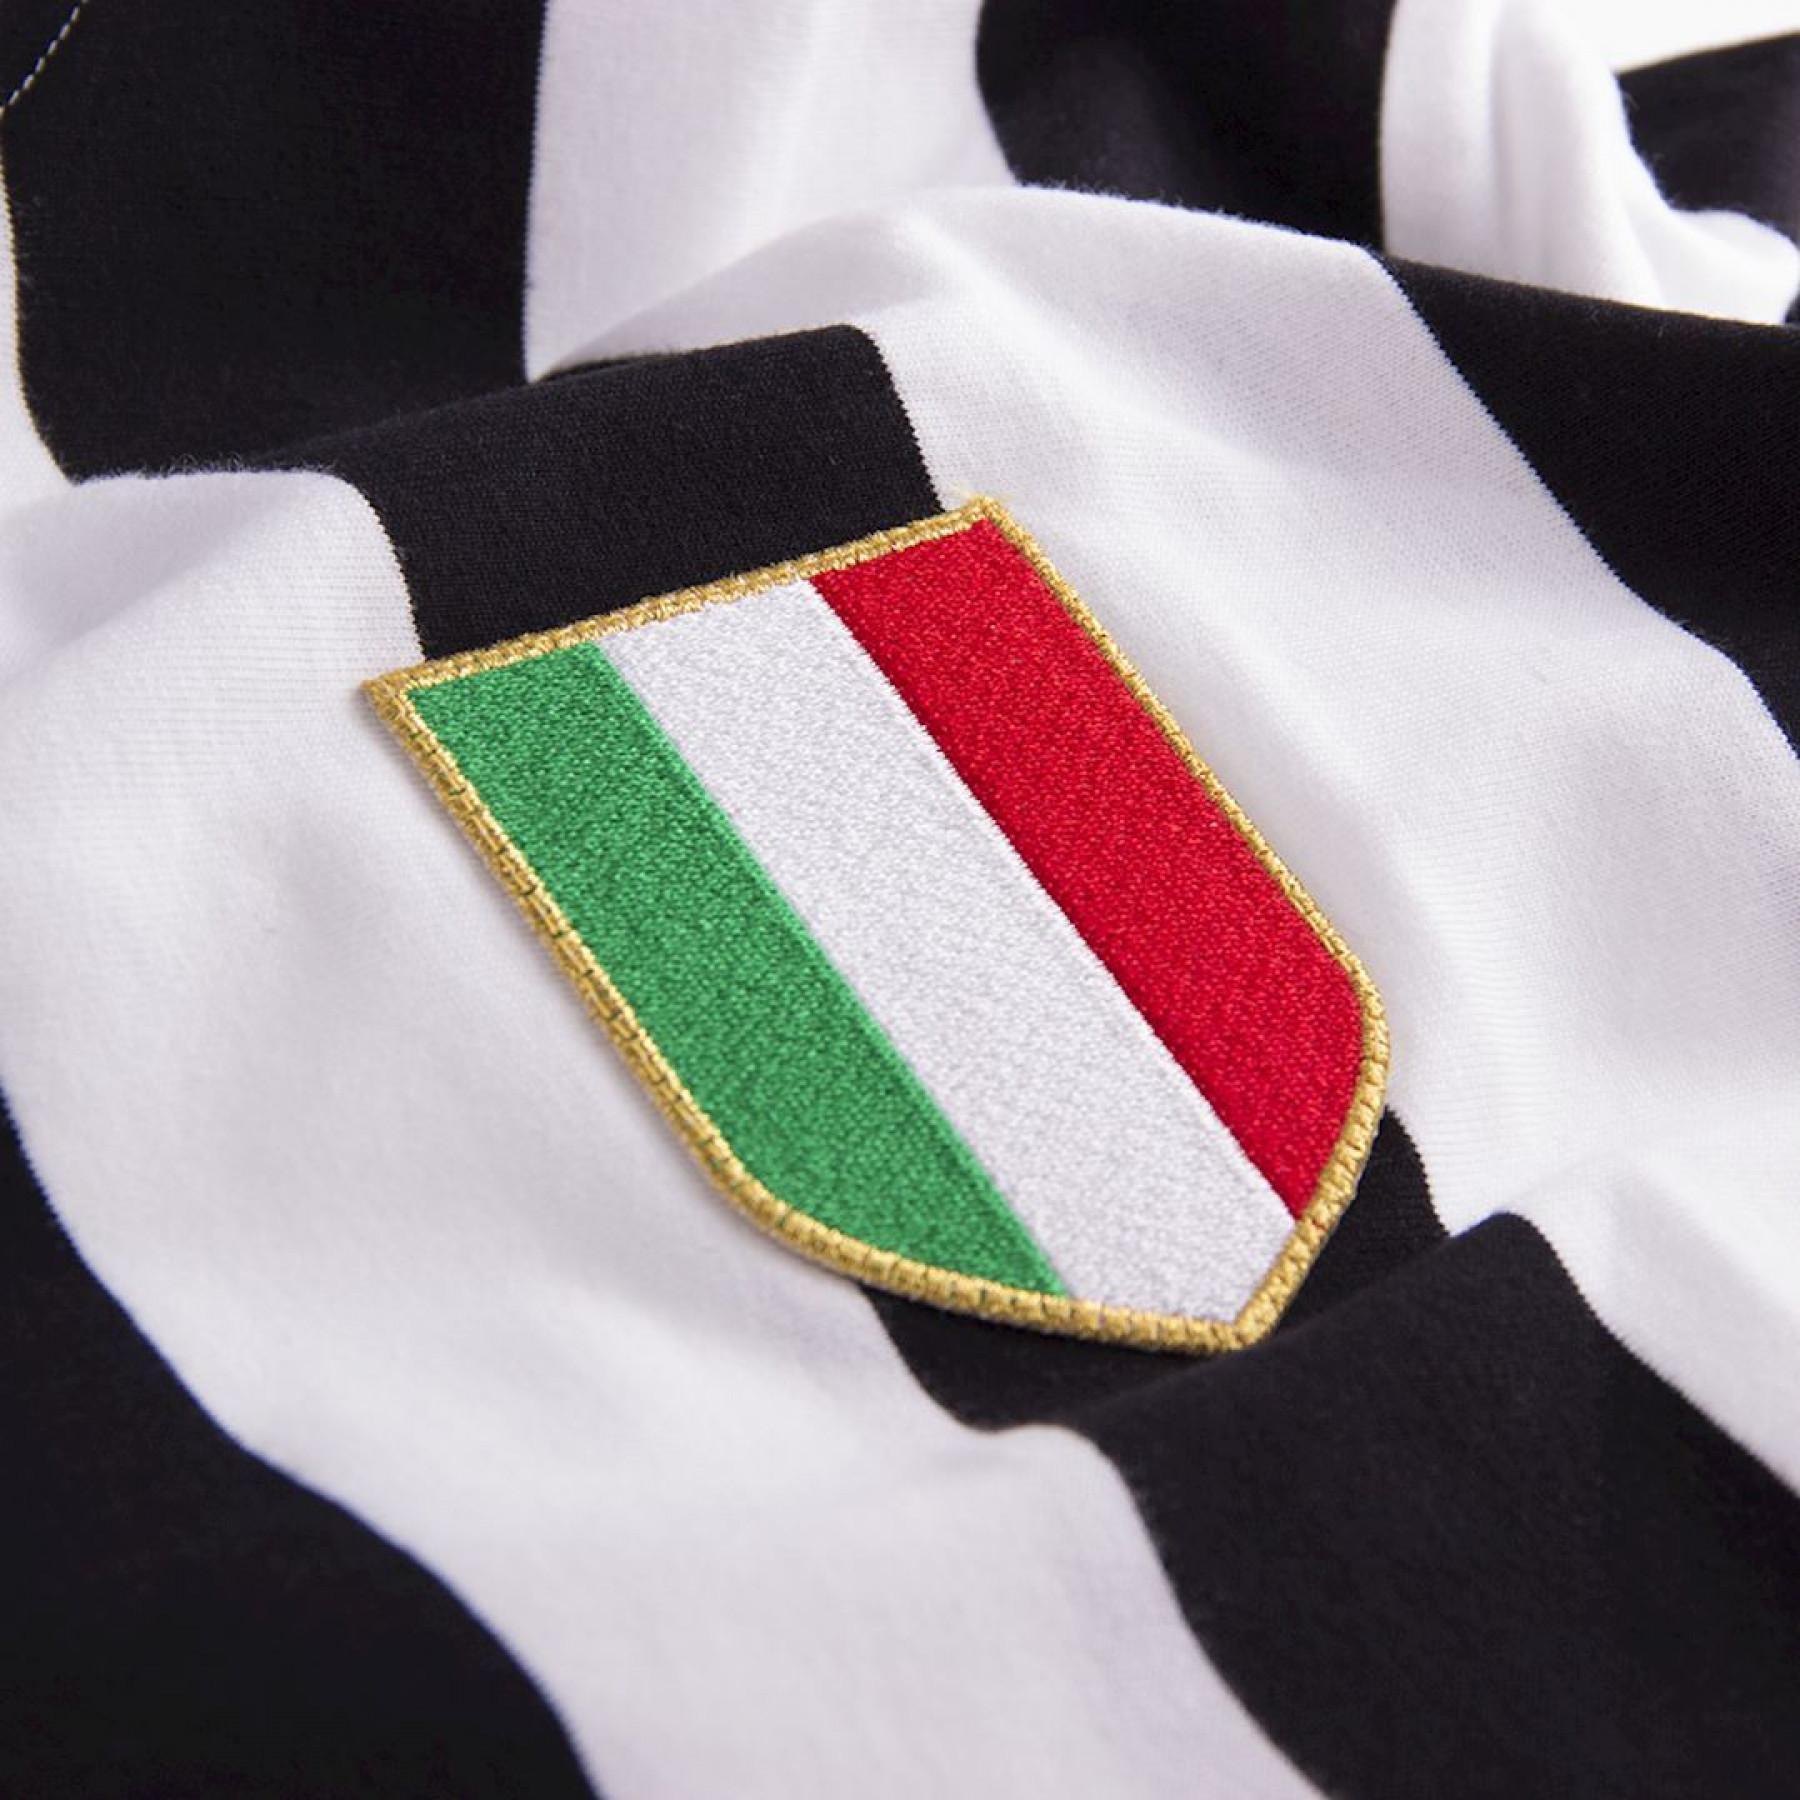 Langarmshirt Copa Juventus Turin 1951/52